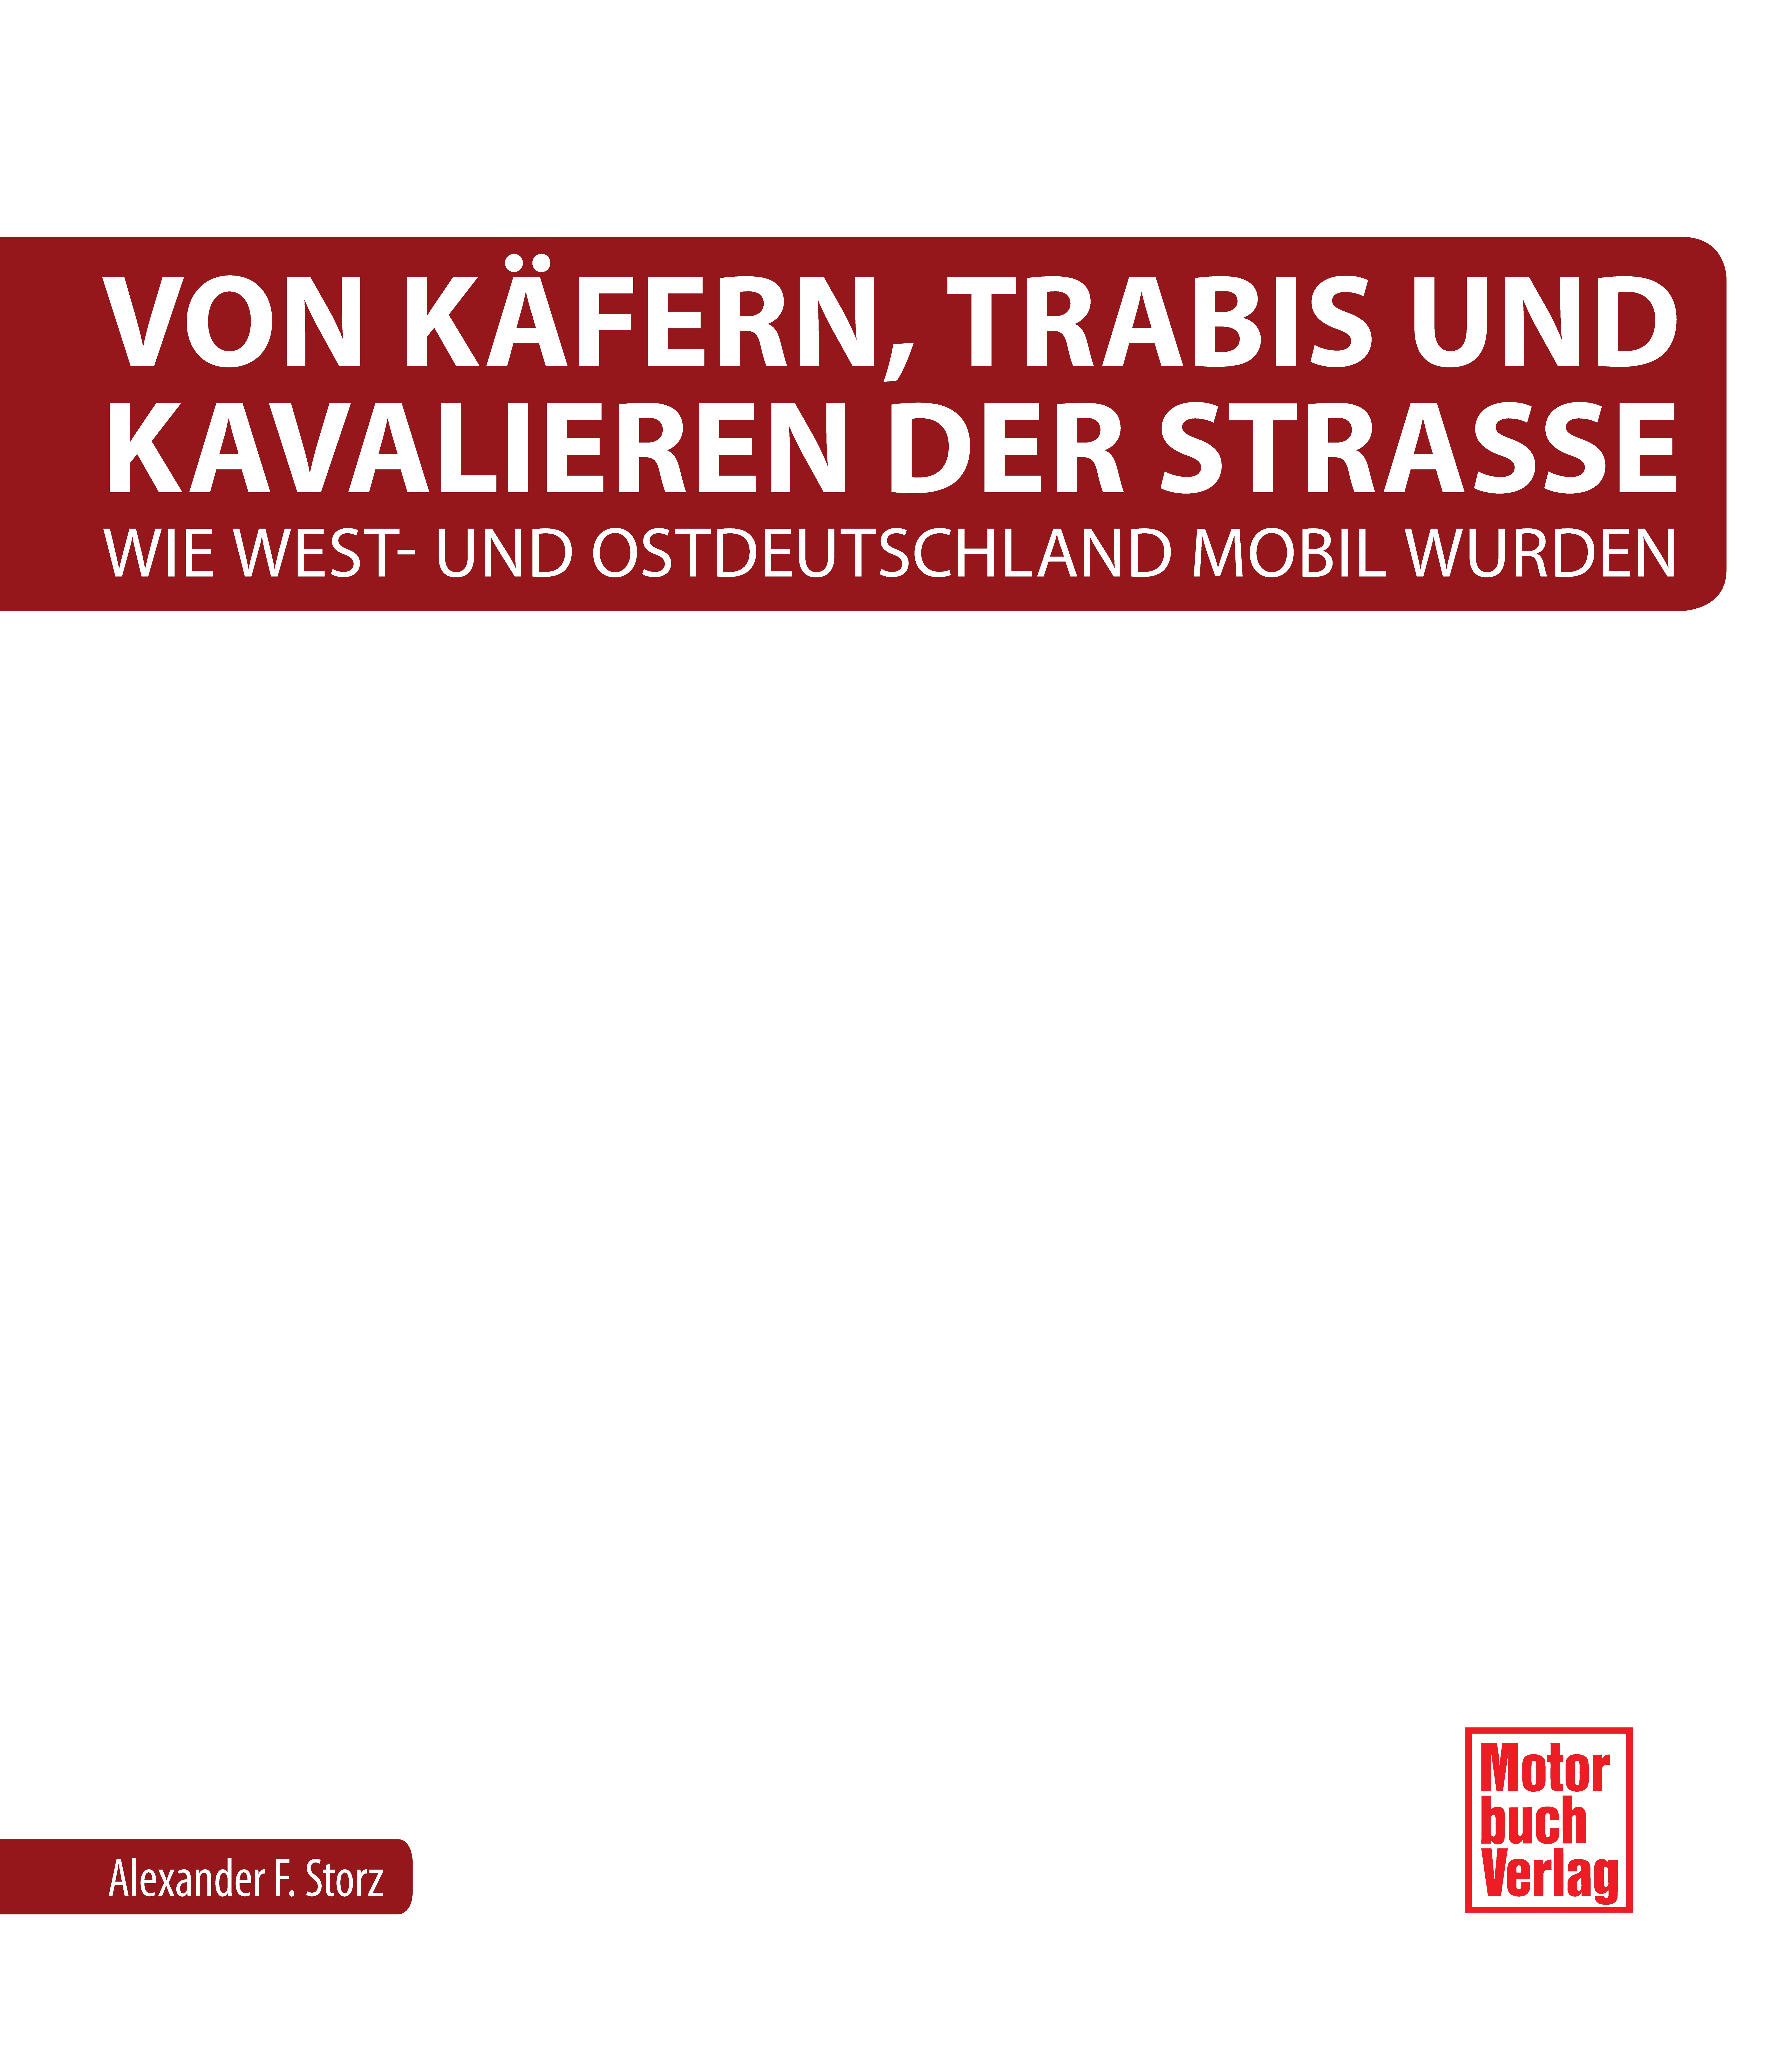 Von Käfern, Trabis und Kavalieren_Seite_02